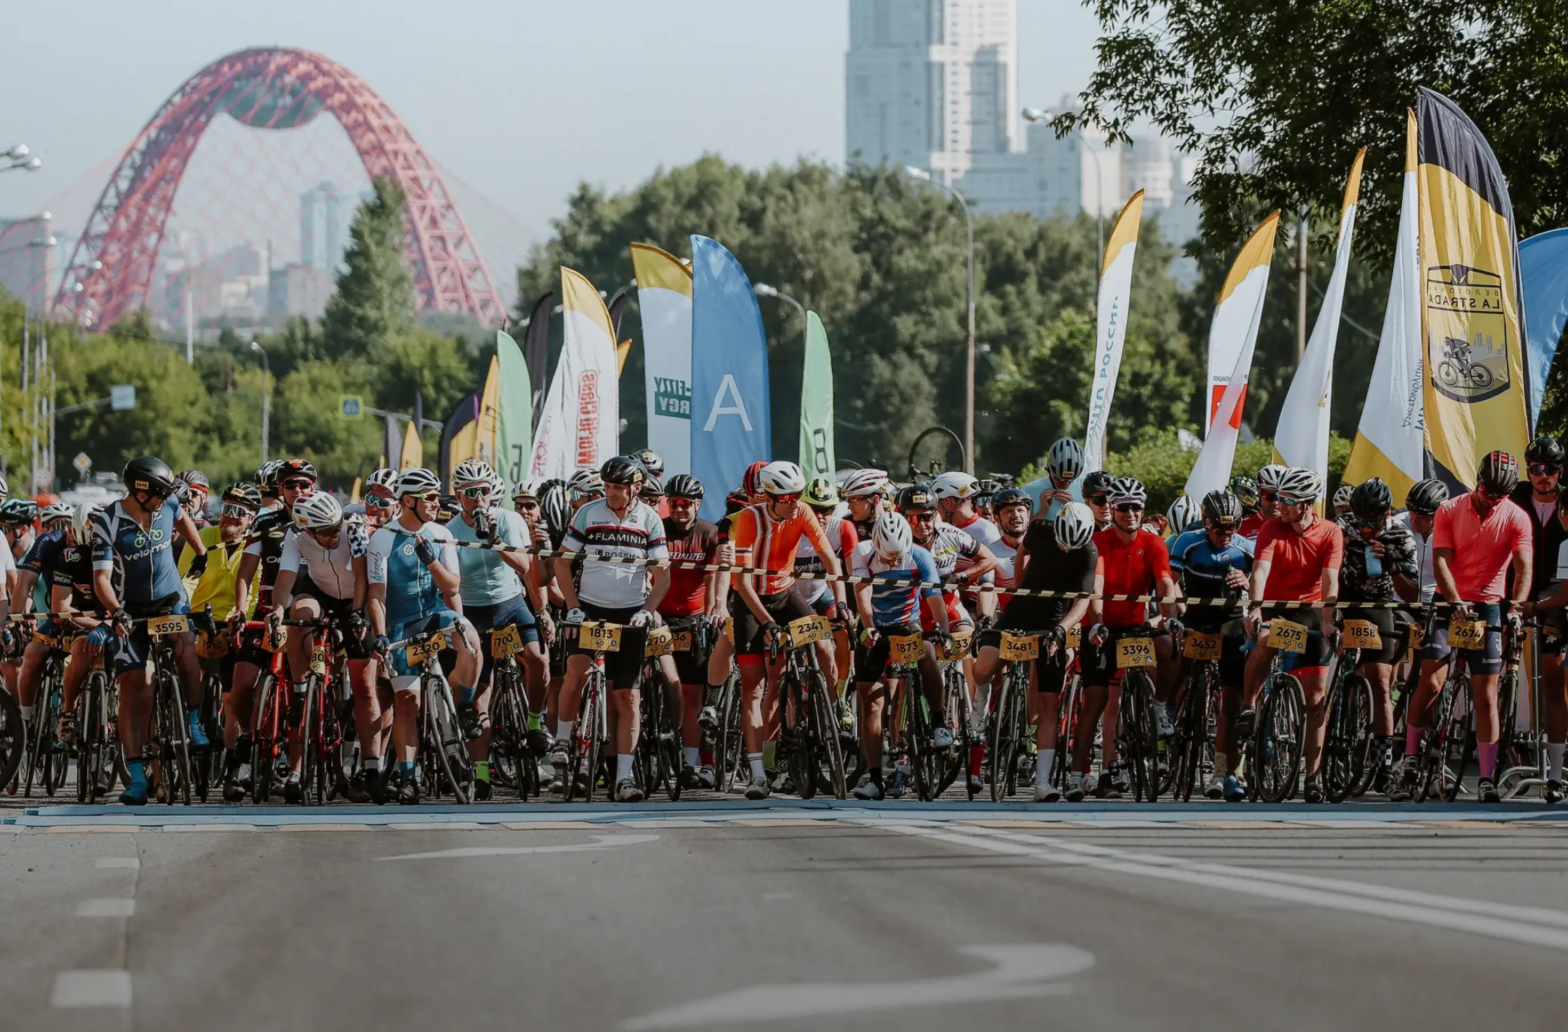 30 июня в Москве пройдут велогонка и велофестиваль La Strada